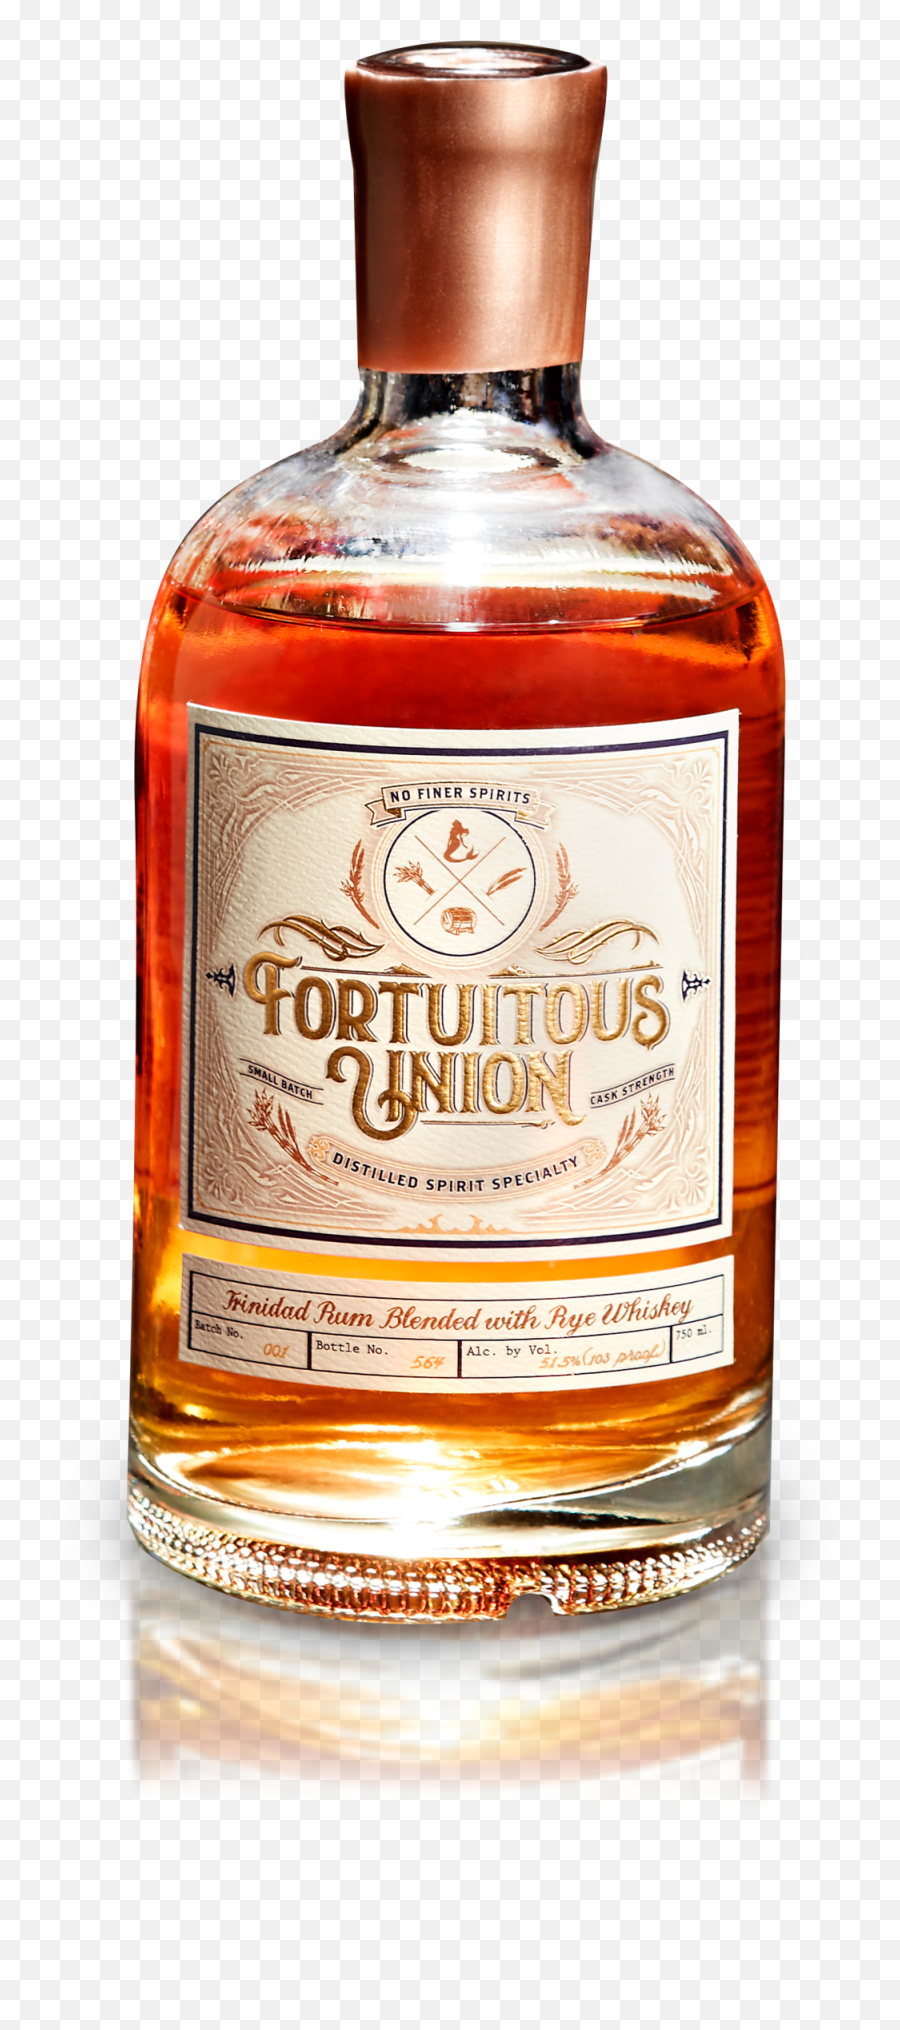 Fortuitous Union Png Liquor Bottle